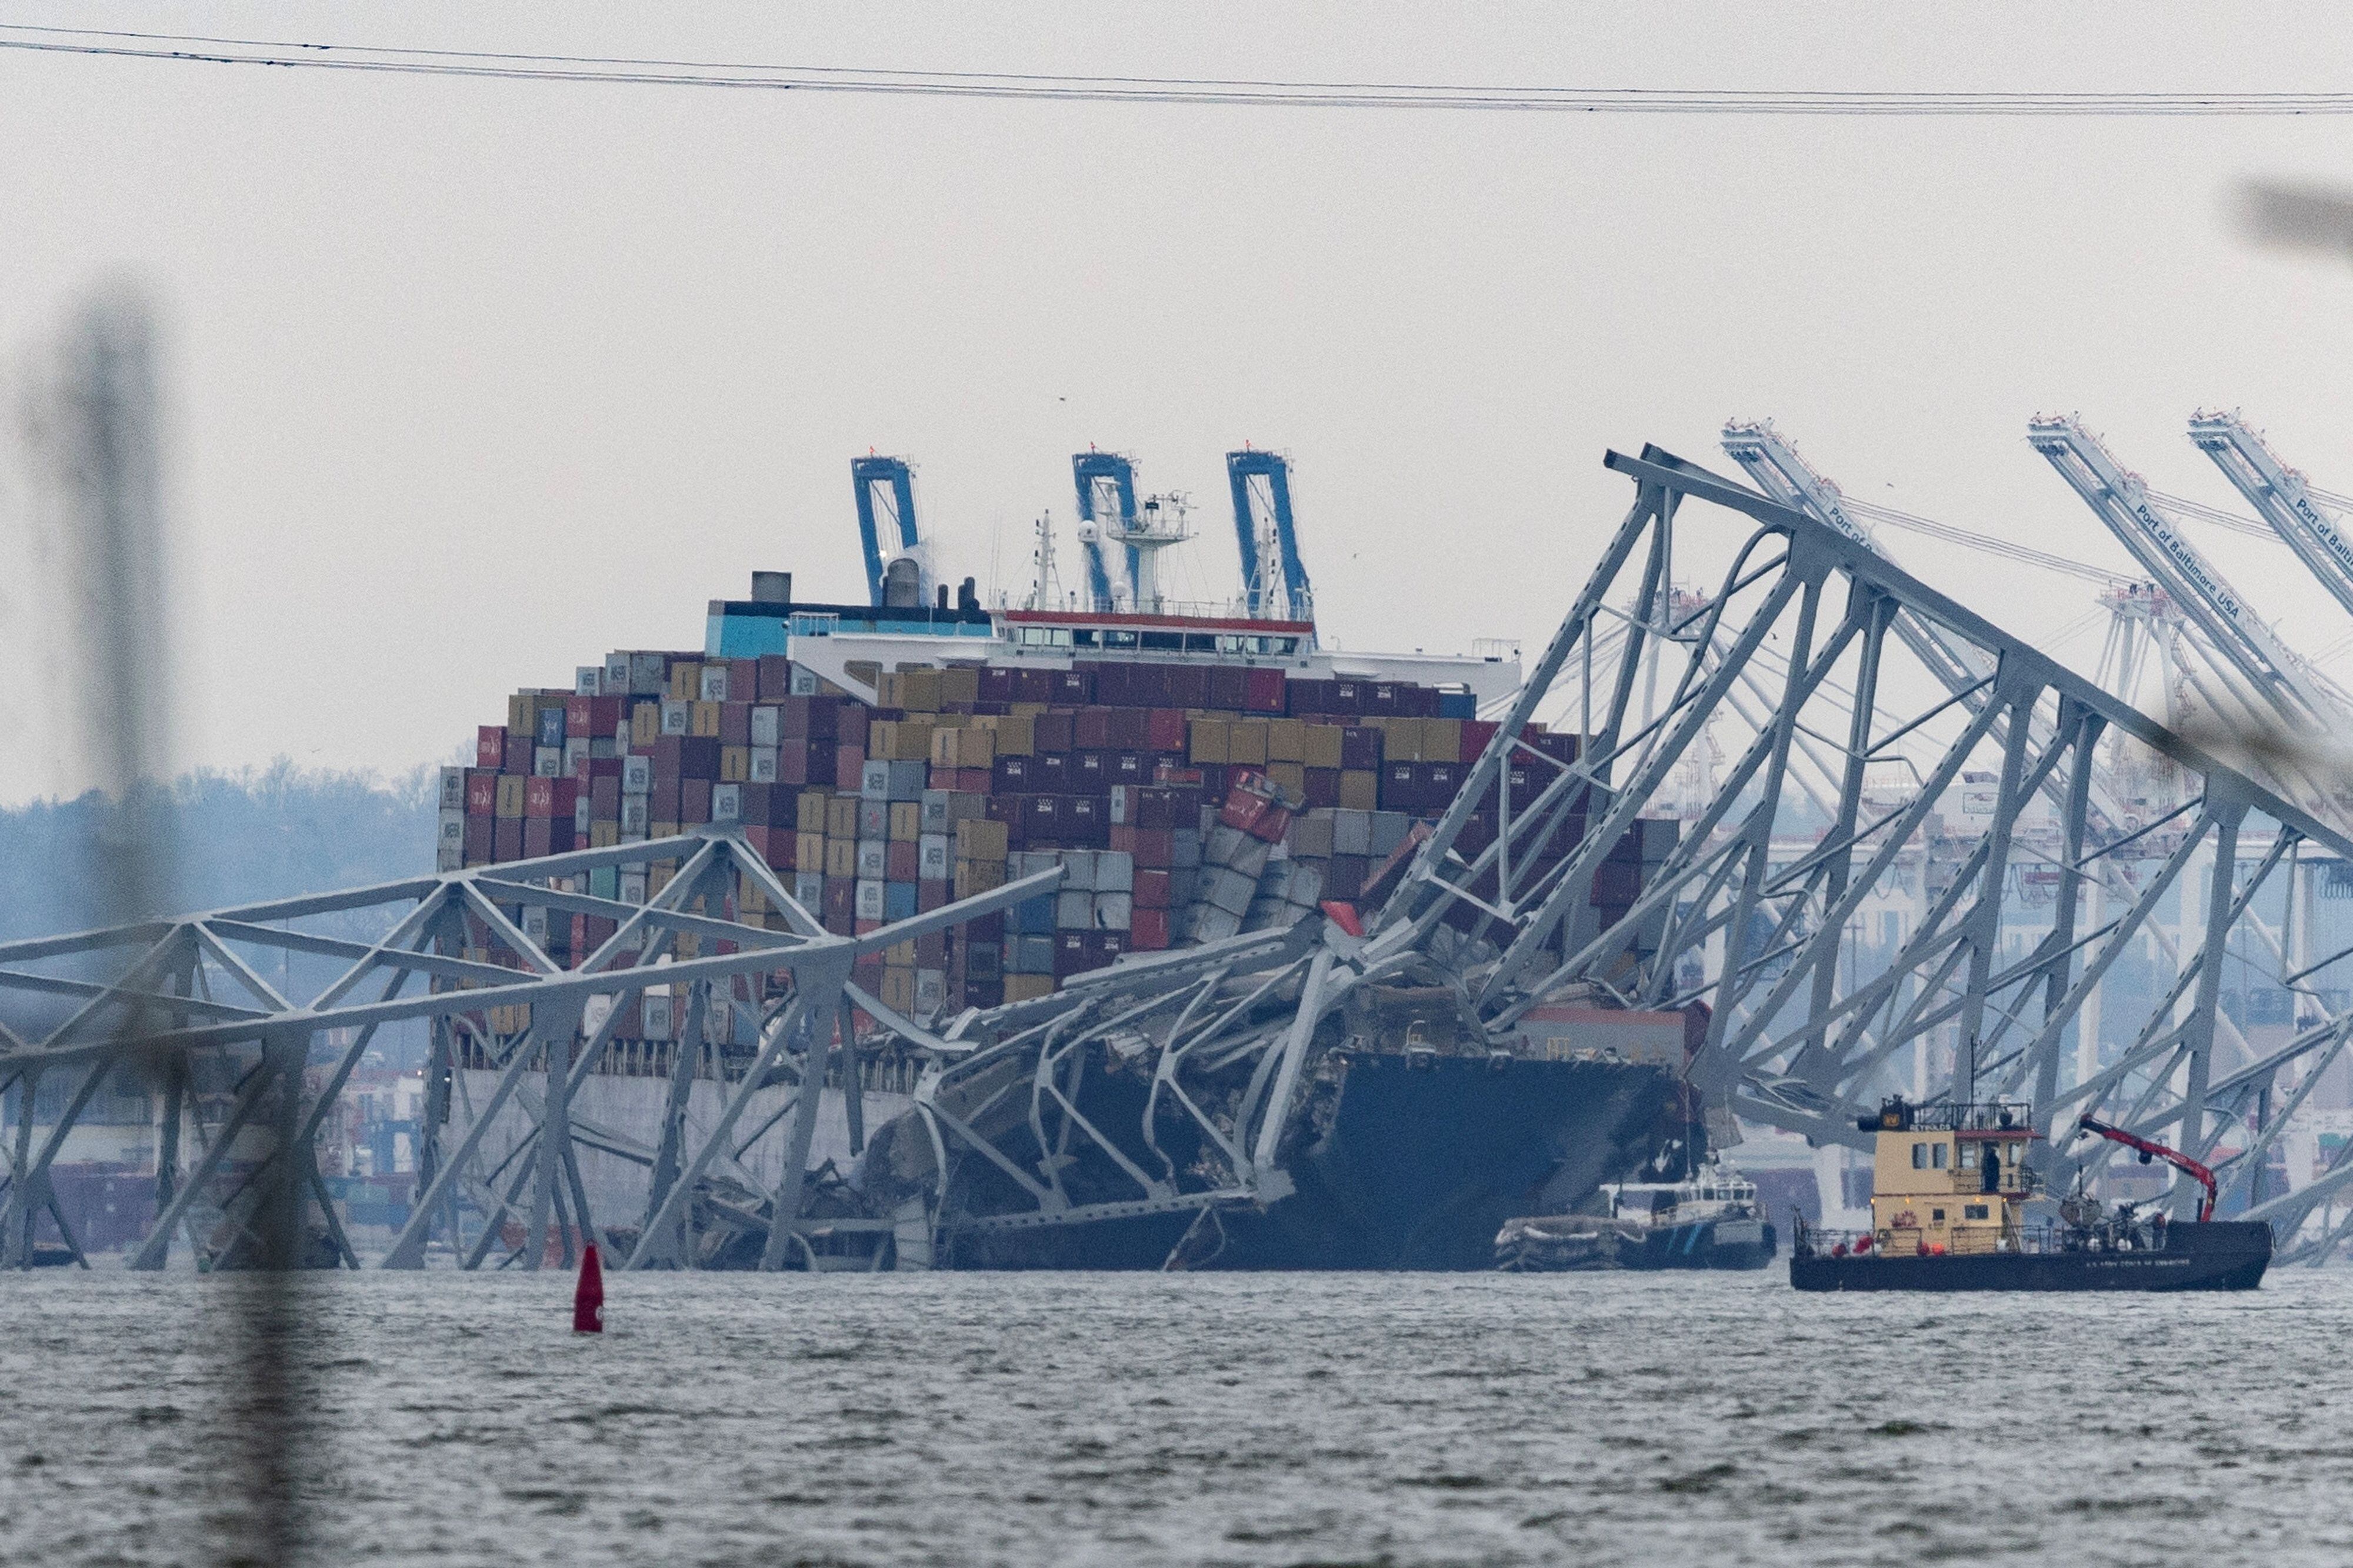 La reapertura del puerto de Baltimore se retrasará debido a las operaciones de rescate y despeje de escombros en la zona. (REUTERS)